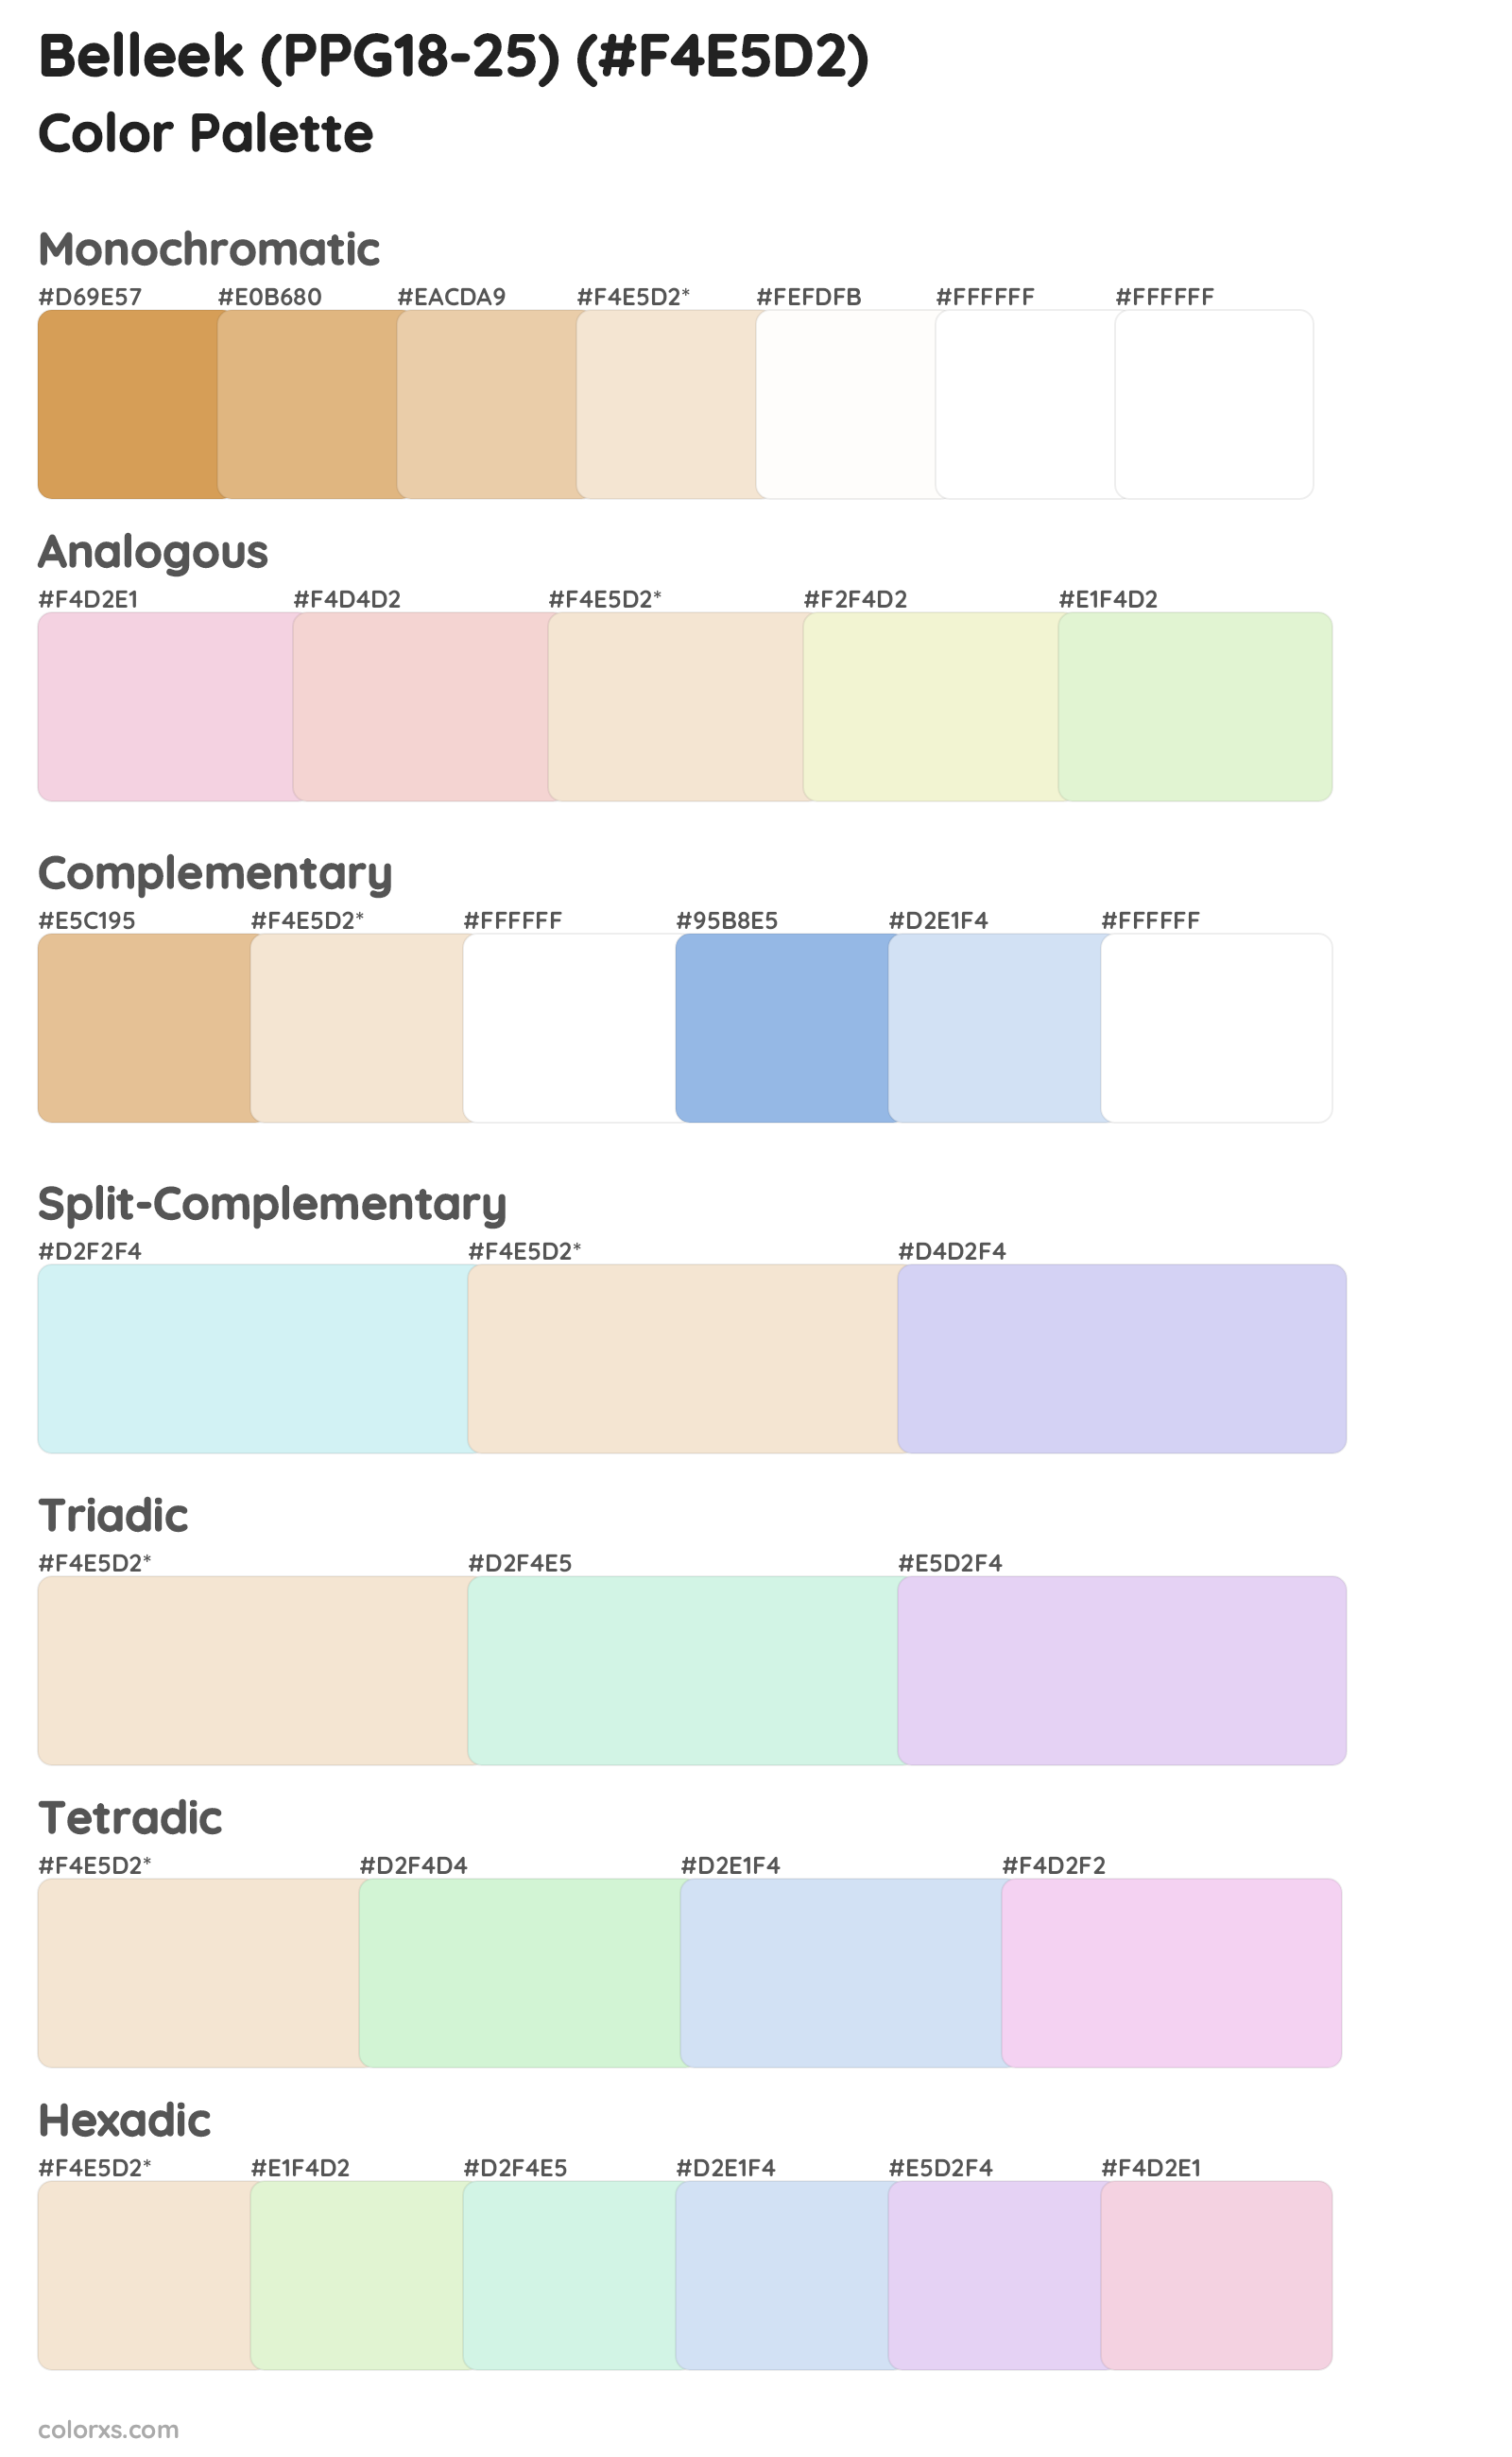 Belleek (PPG18-25) Color Scheme Palettes